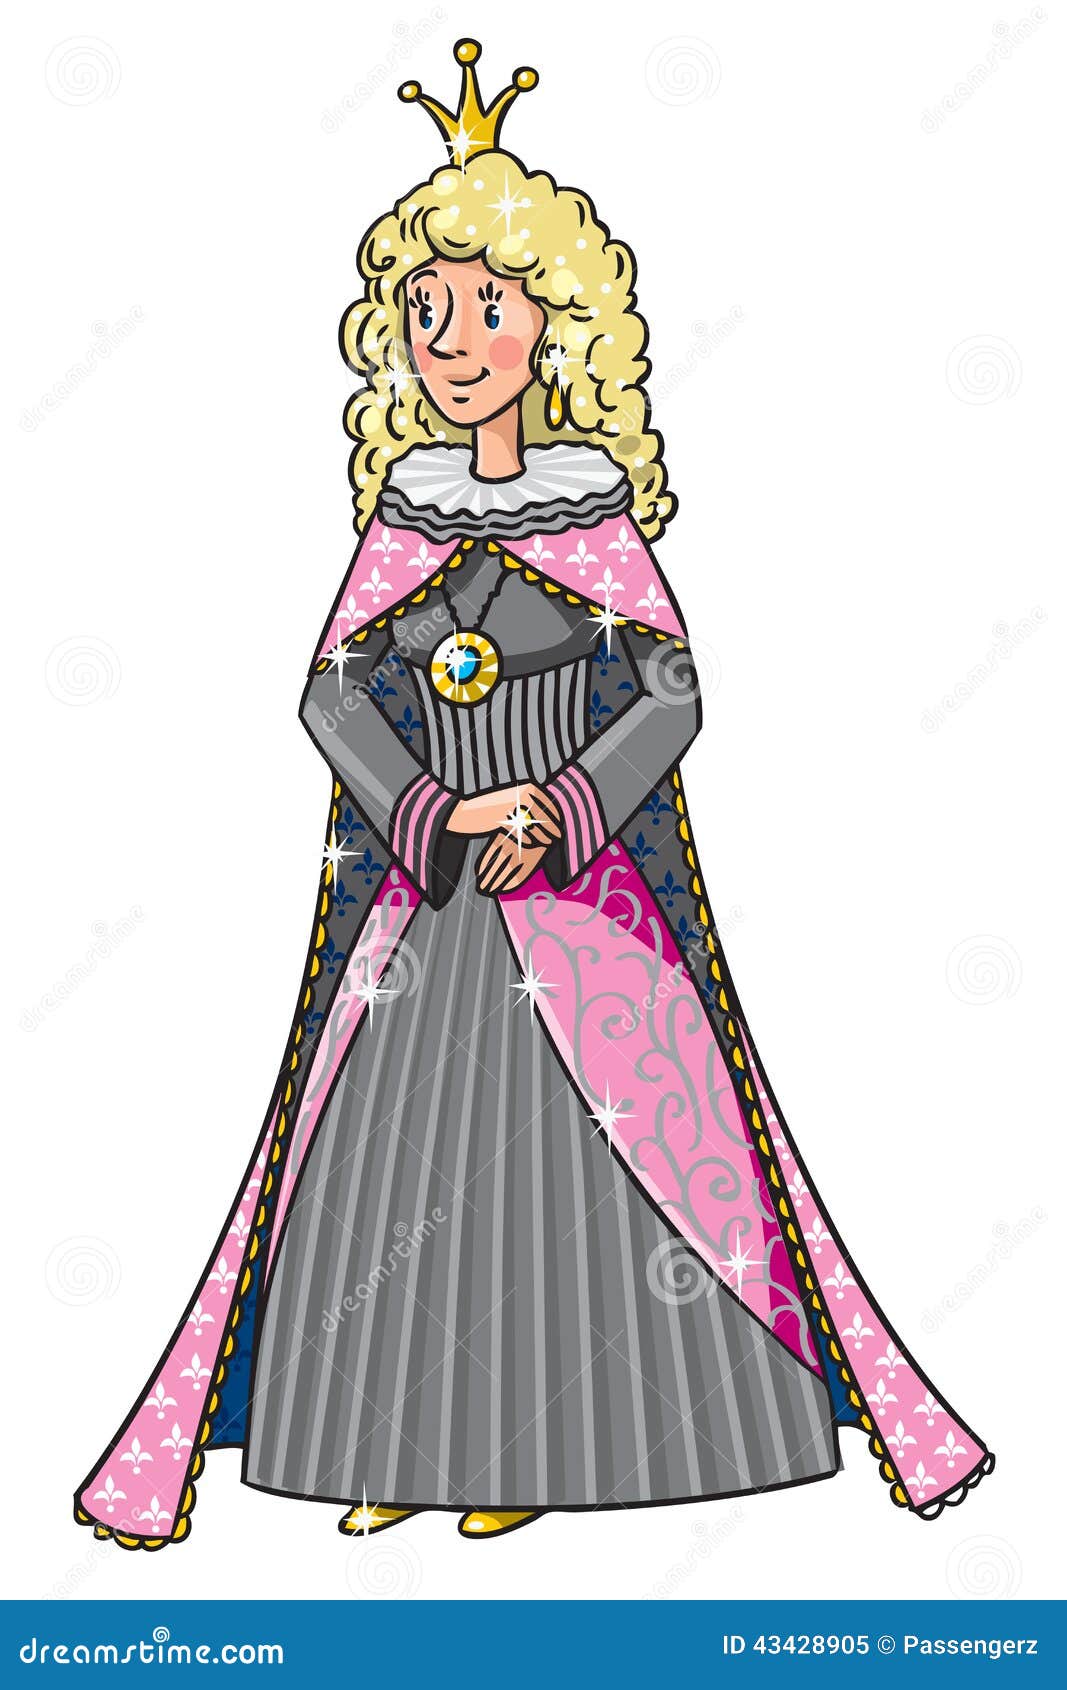 Ферзь или принцесса красоты fairy. Красивые ферзь или принцесса в средневековом платье, кроне и хламиде, с длинным белокурым вьющиеся волосы